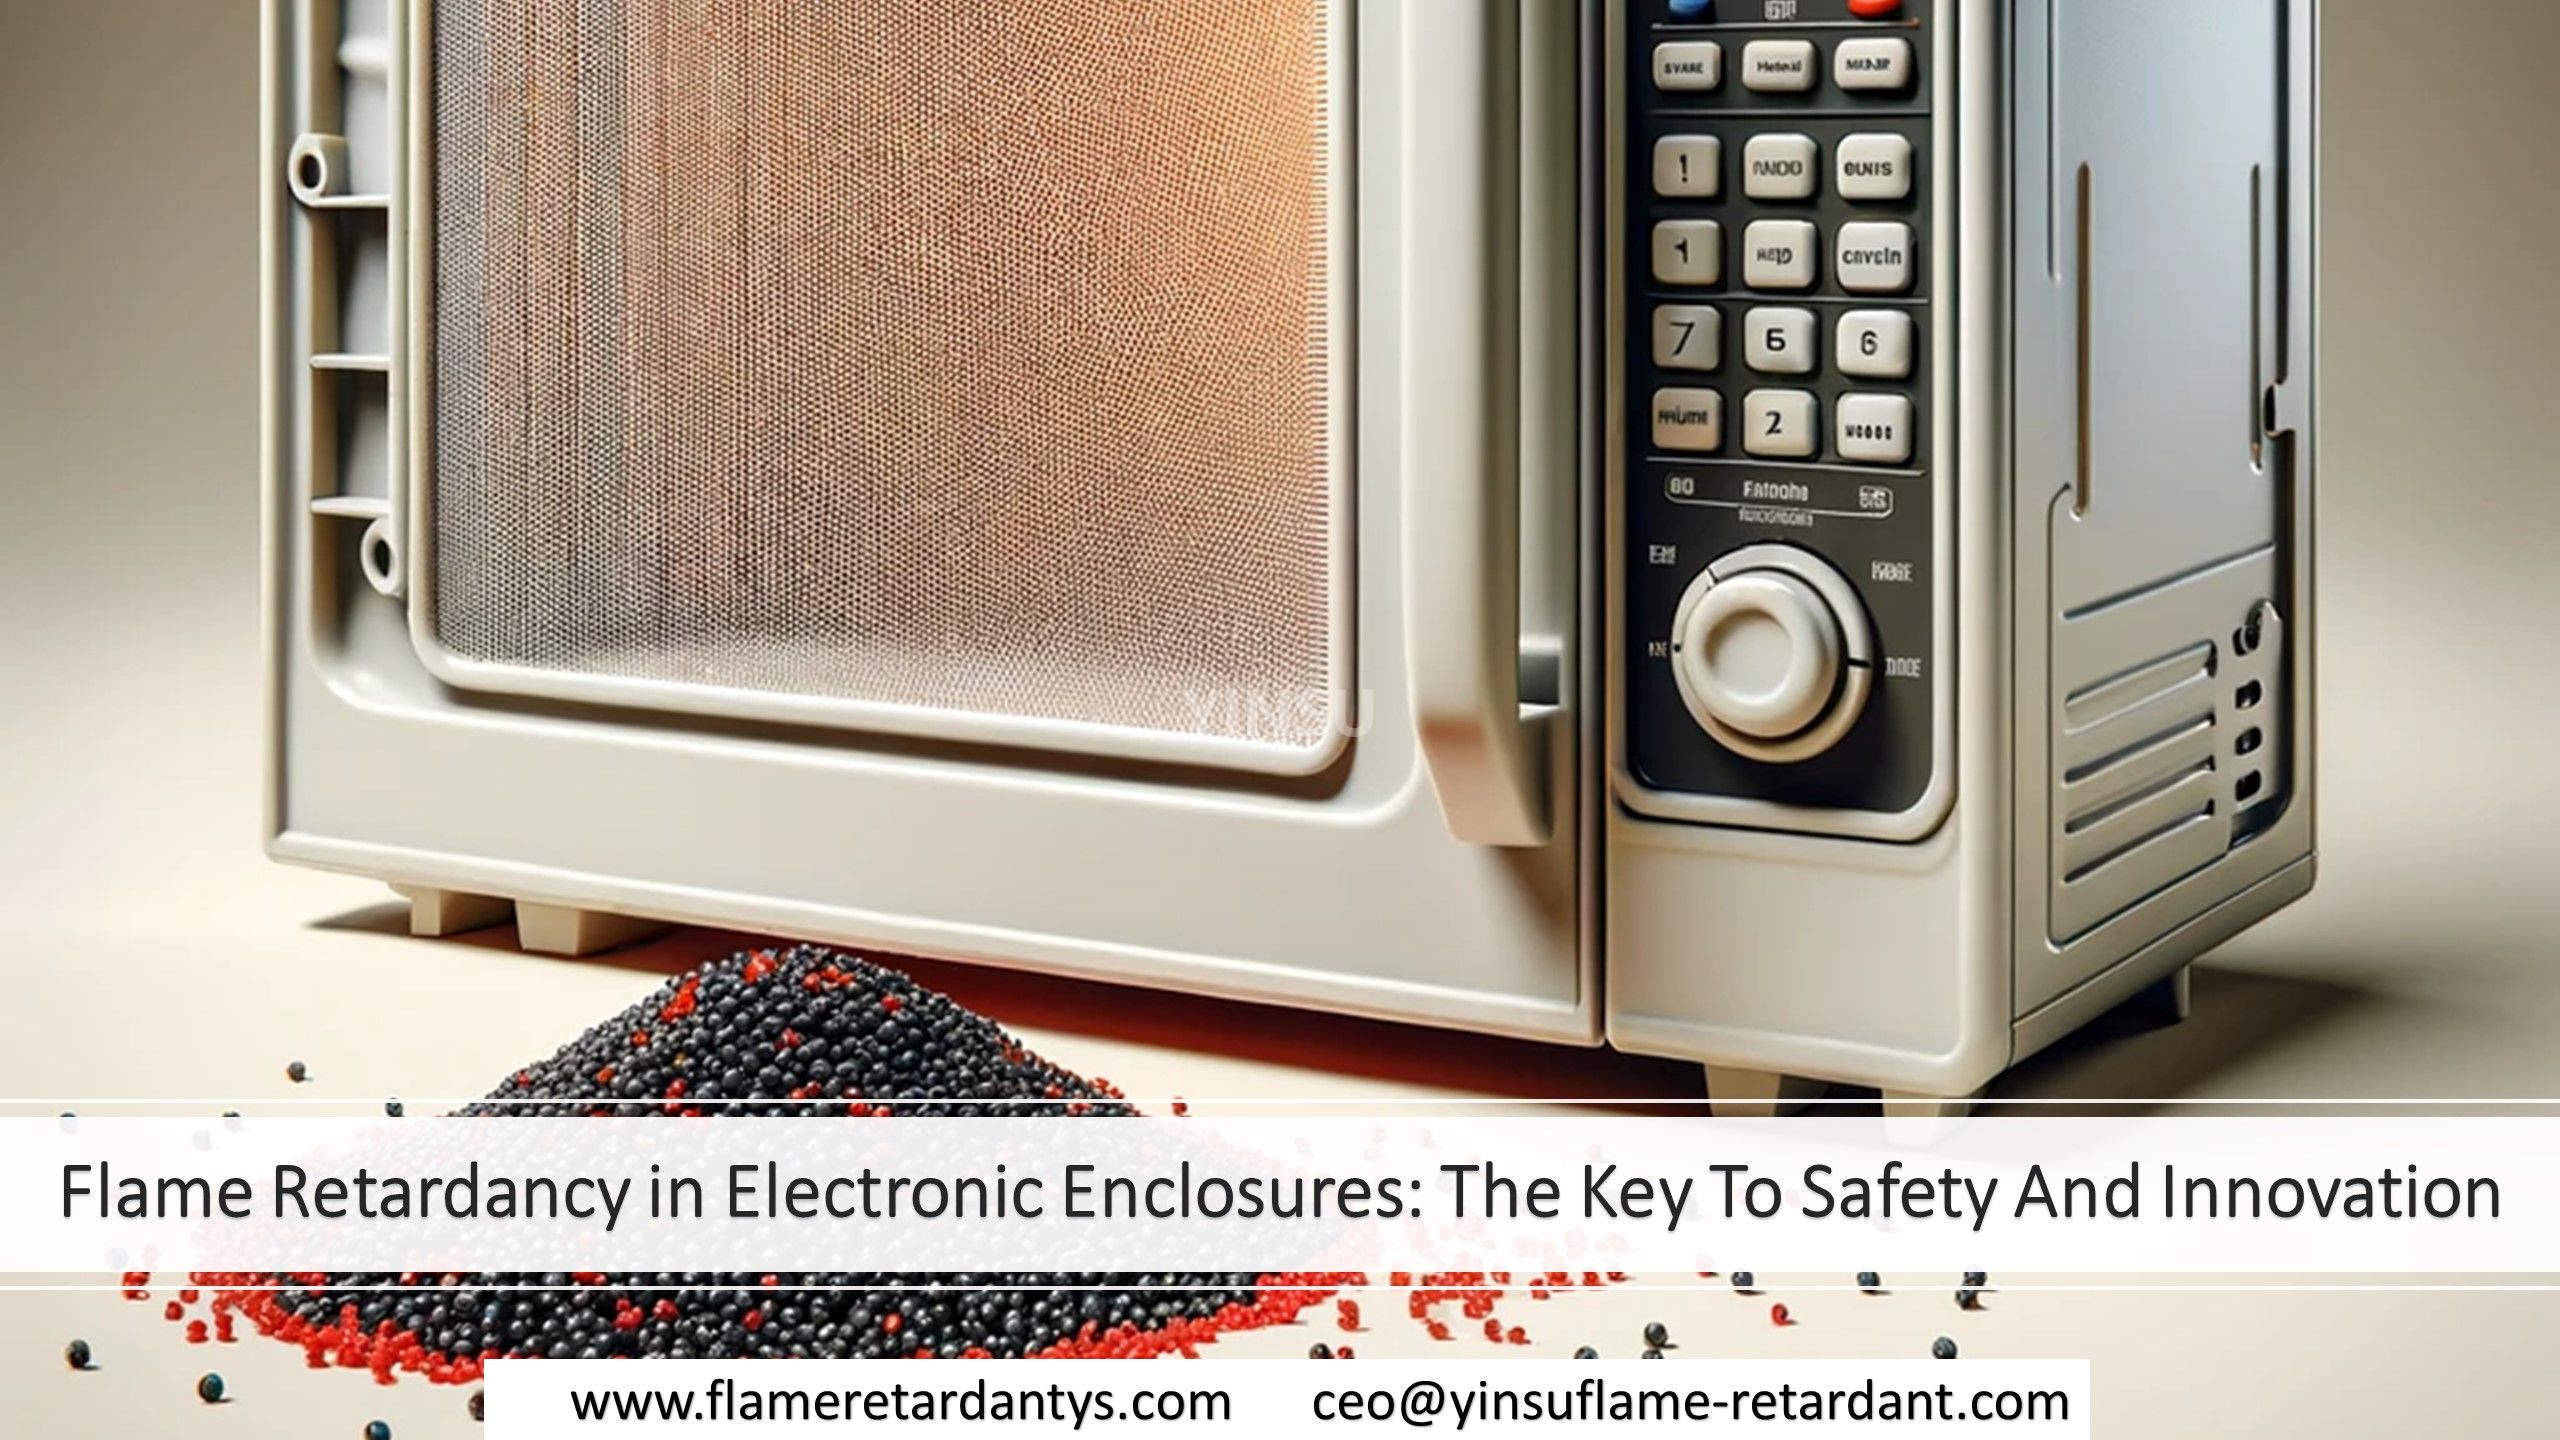 7.1 Retardancia de llama en cajas electrónicas: la clave para la seguridad y la innovación